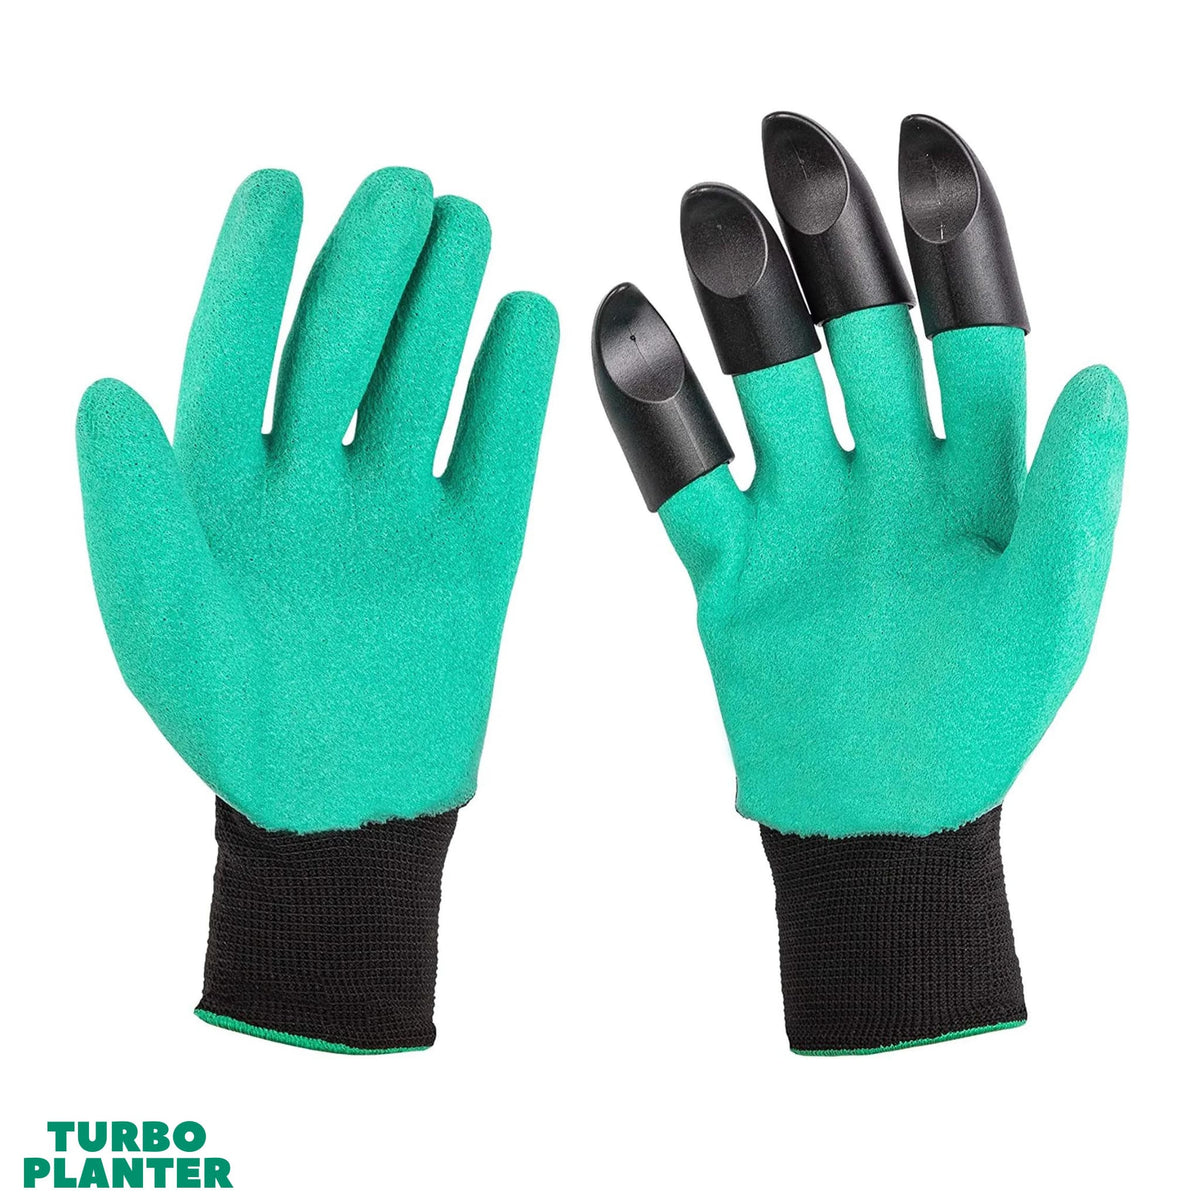 TURBO-Handschuhe - TURBOPLANTER™ - Das Original nur hier im Shop!